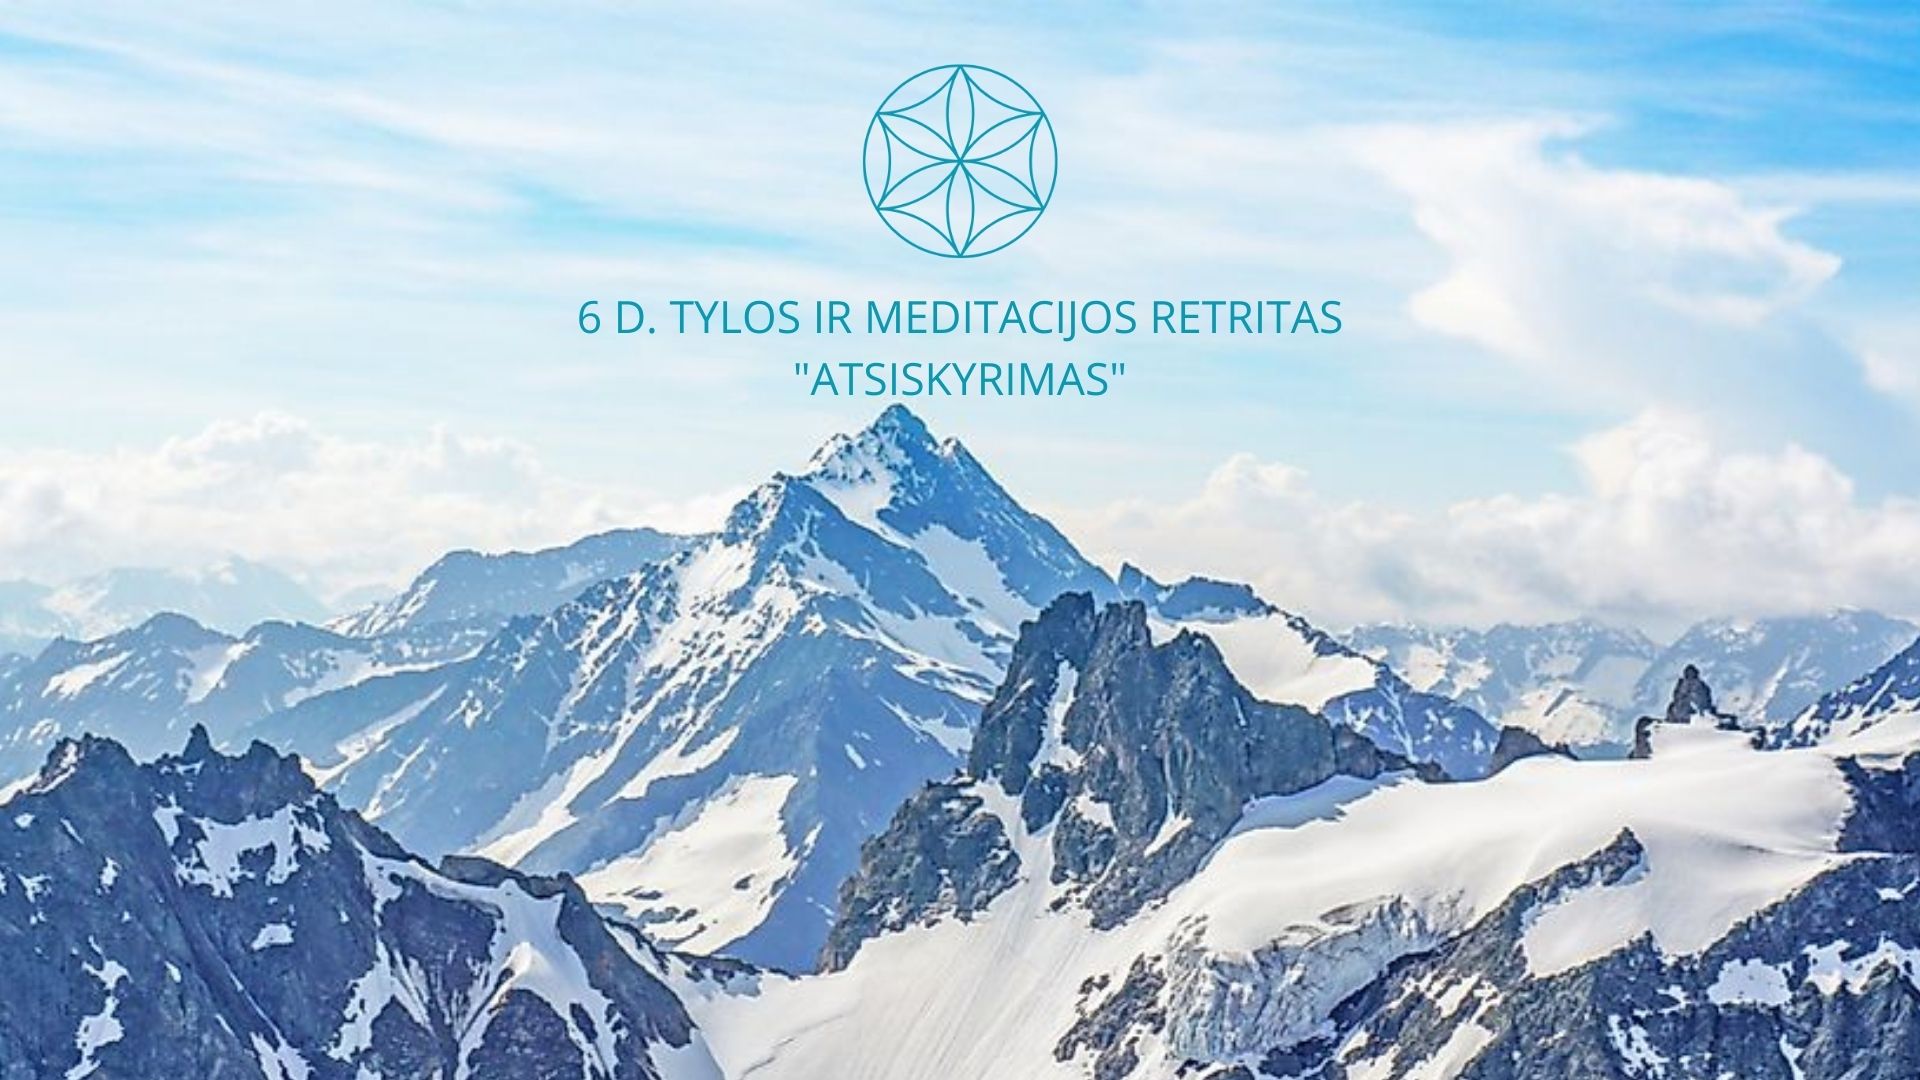 Read more about the article 6 d. Tylos ir meditacijos retritas “ATSISKYRIMAS” kovo 21-26 d